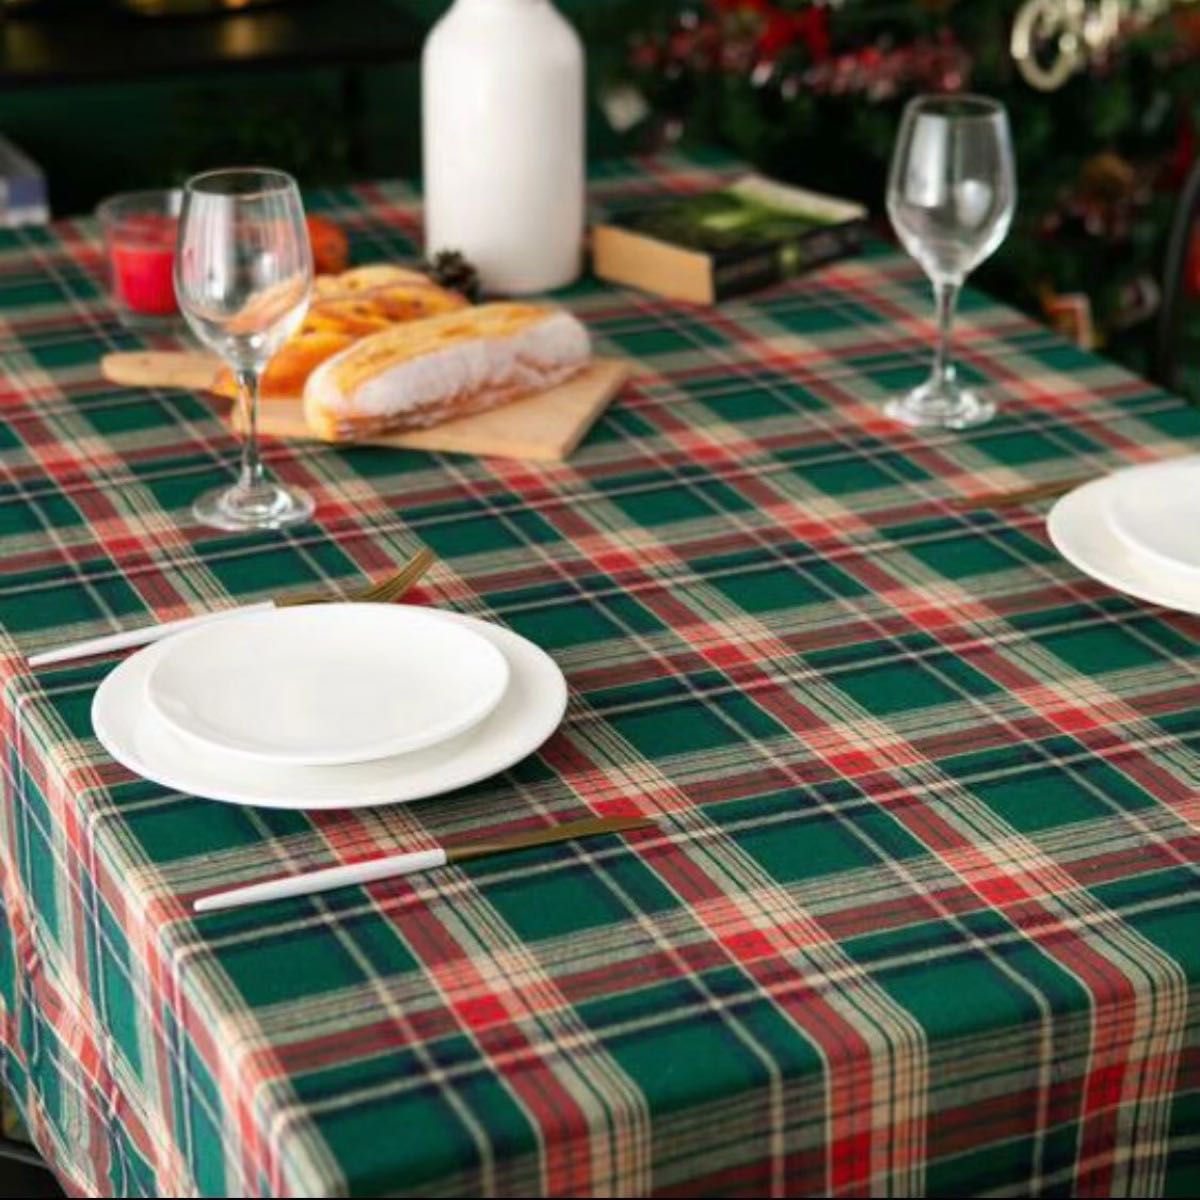 テーブルクロス チェック柄 クリスマス パーティ 秋冬 テーブルグリーン 緑Xmas 北欧 テーブルコーディネート